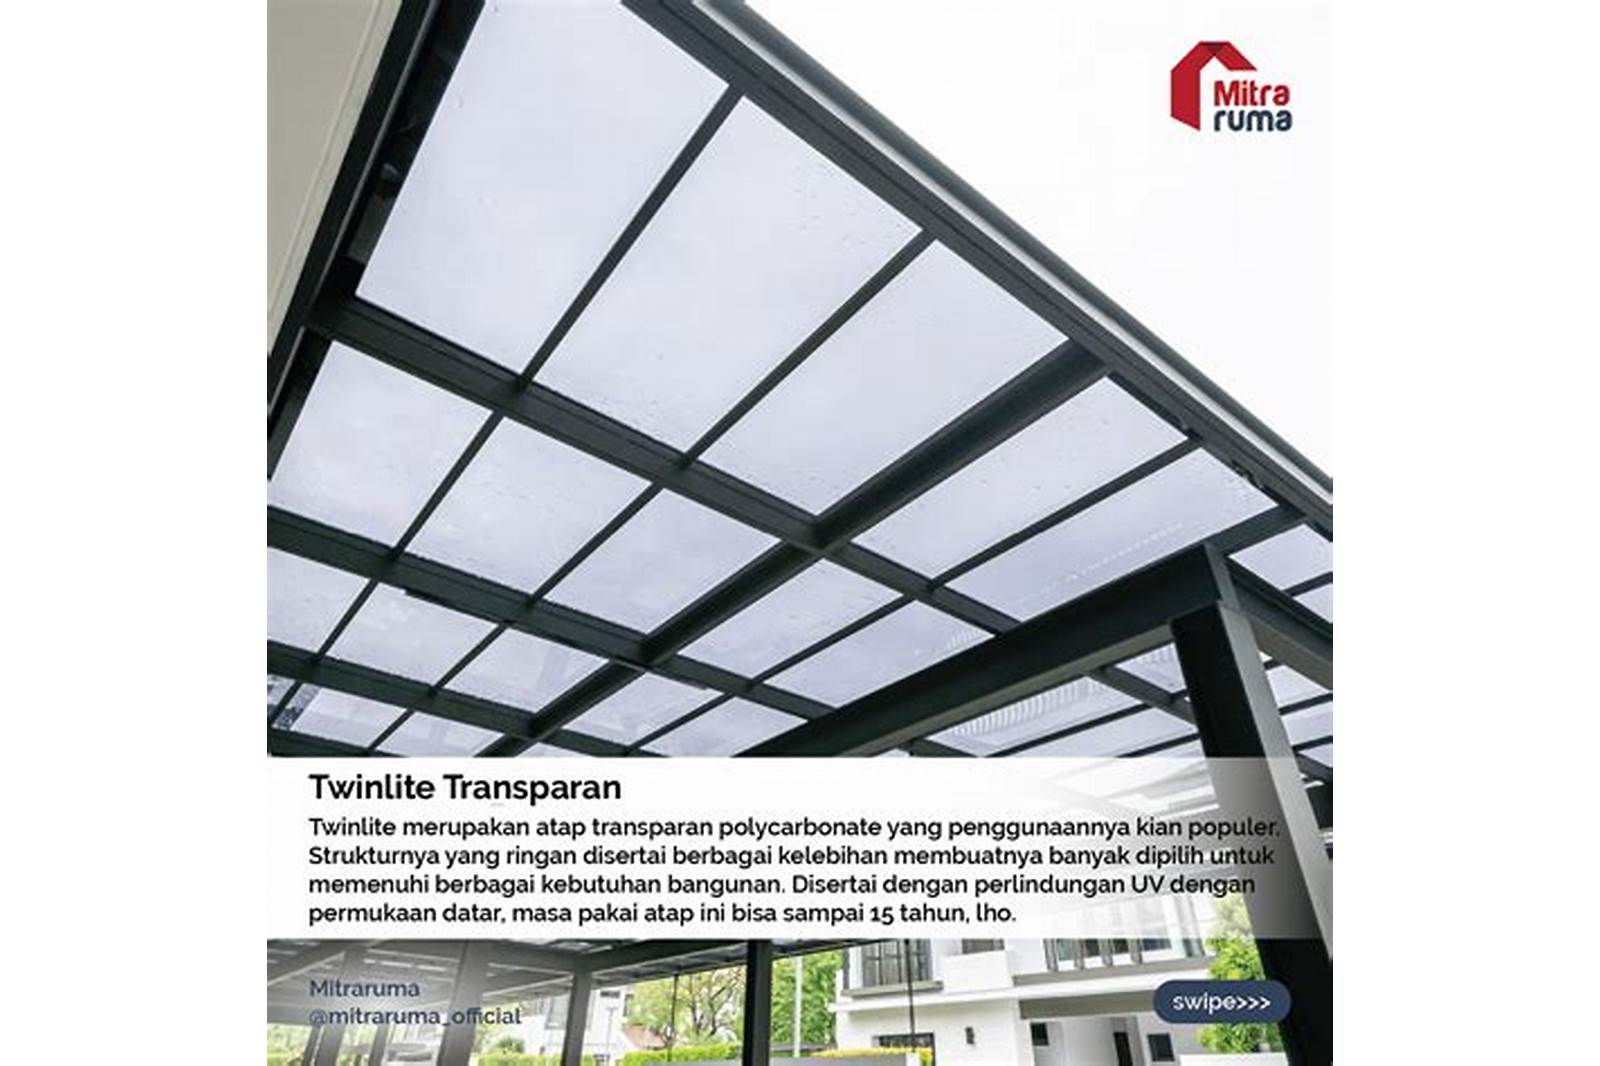 Atap Transparan: Memaksimalkan Pencahayaan Alam dan Menambah Estetika Rumah